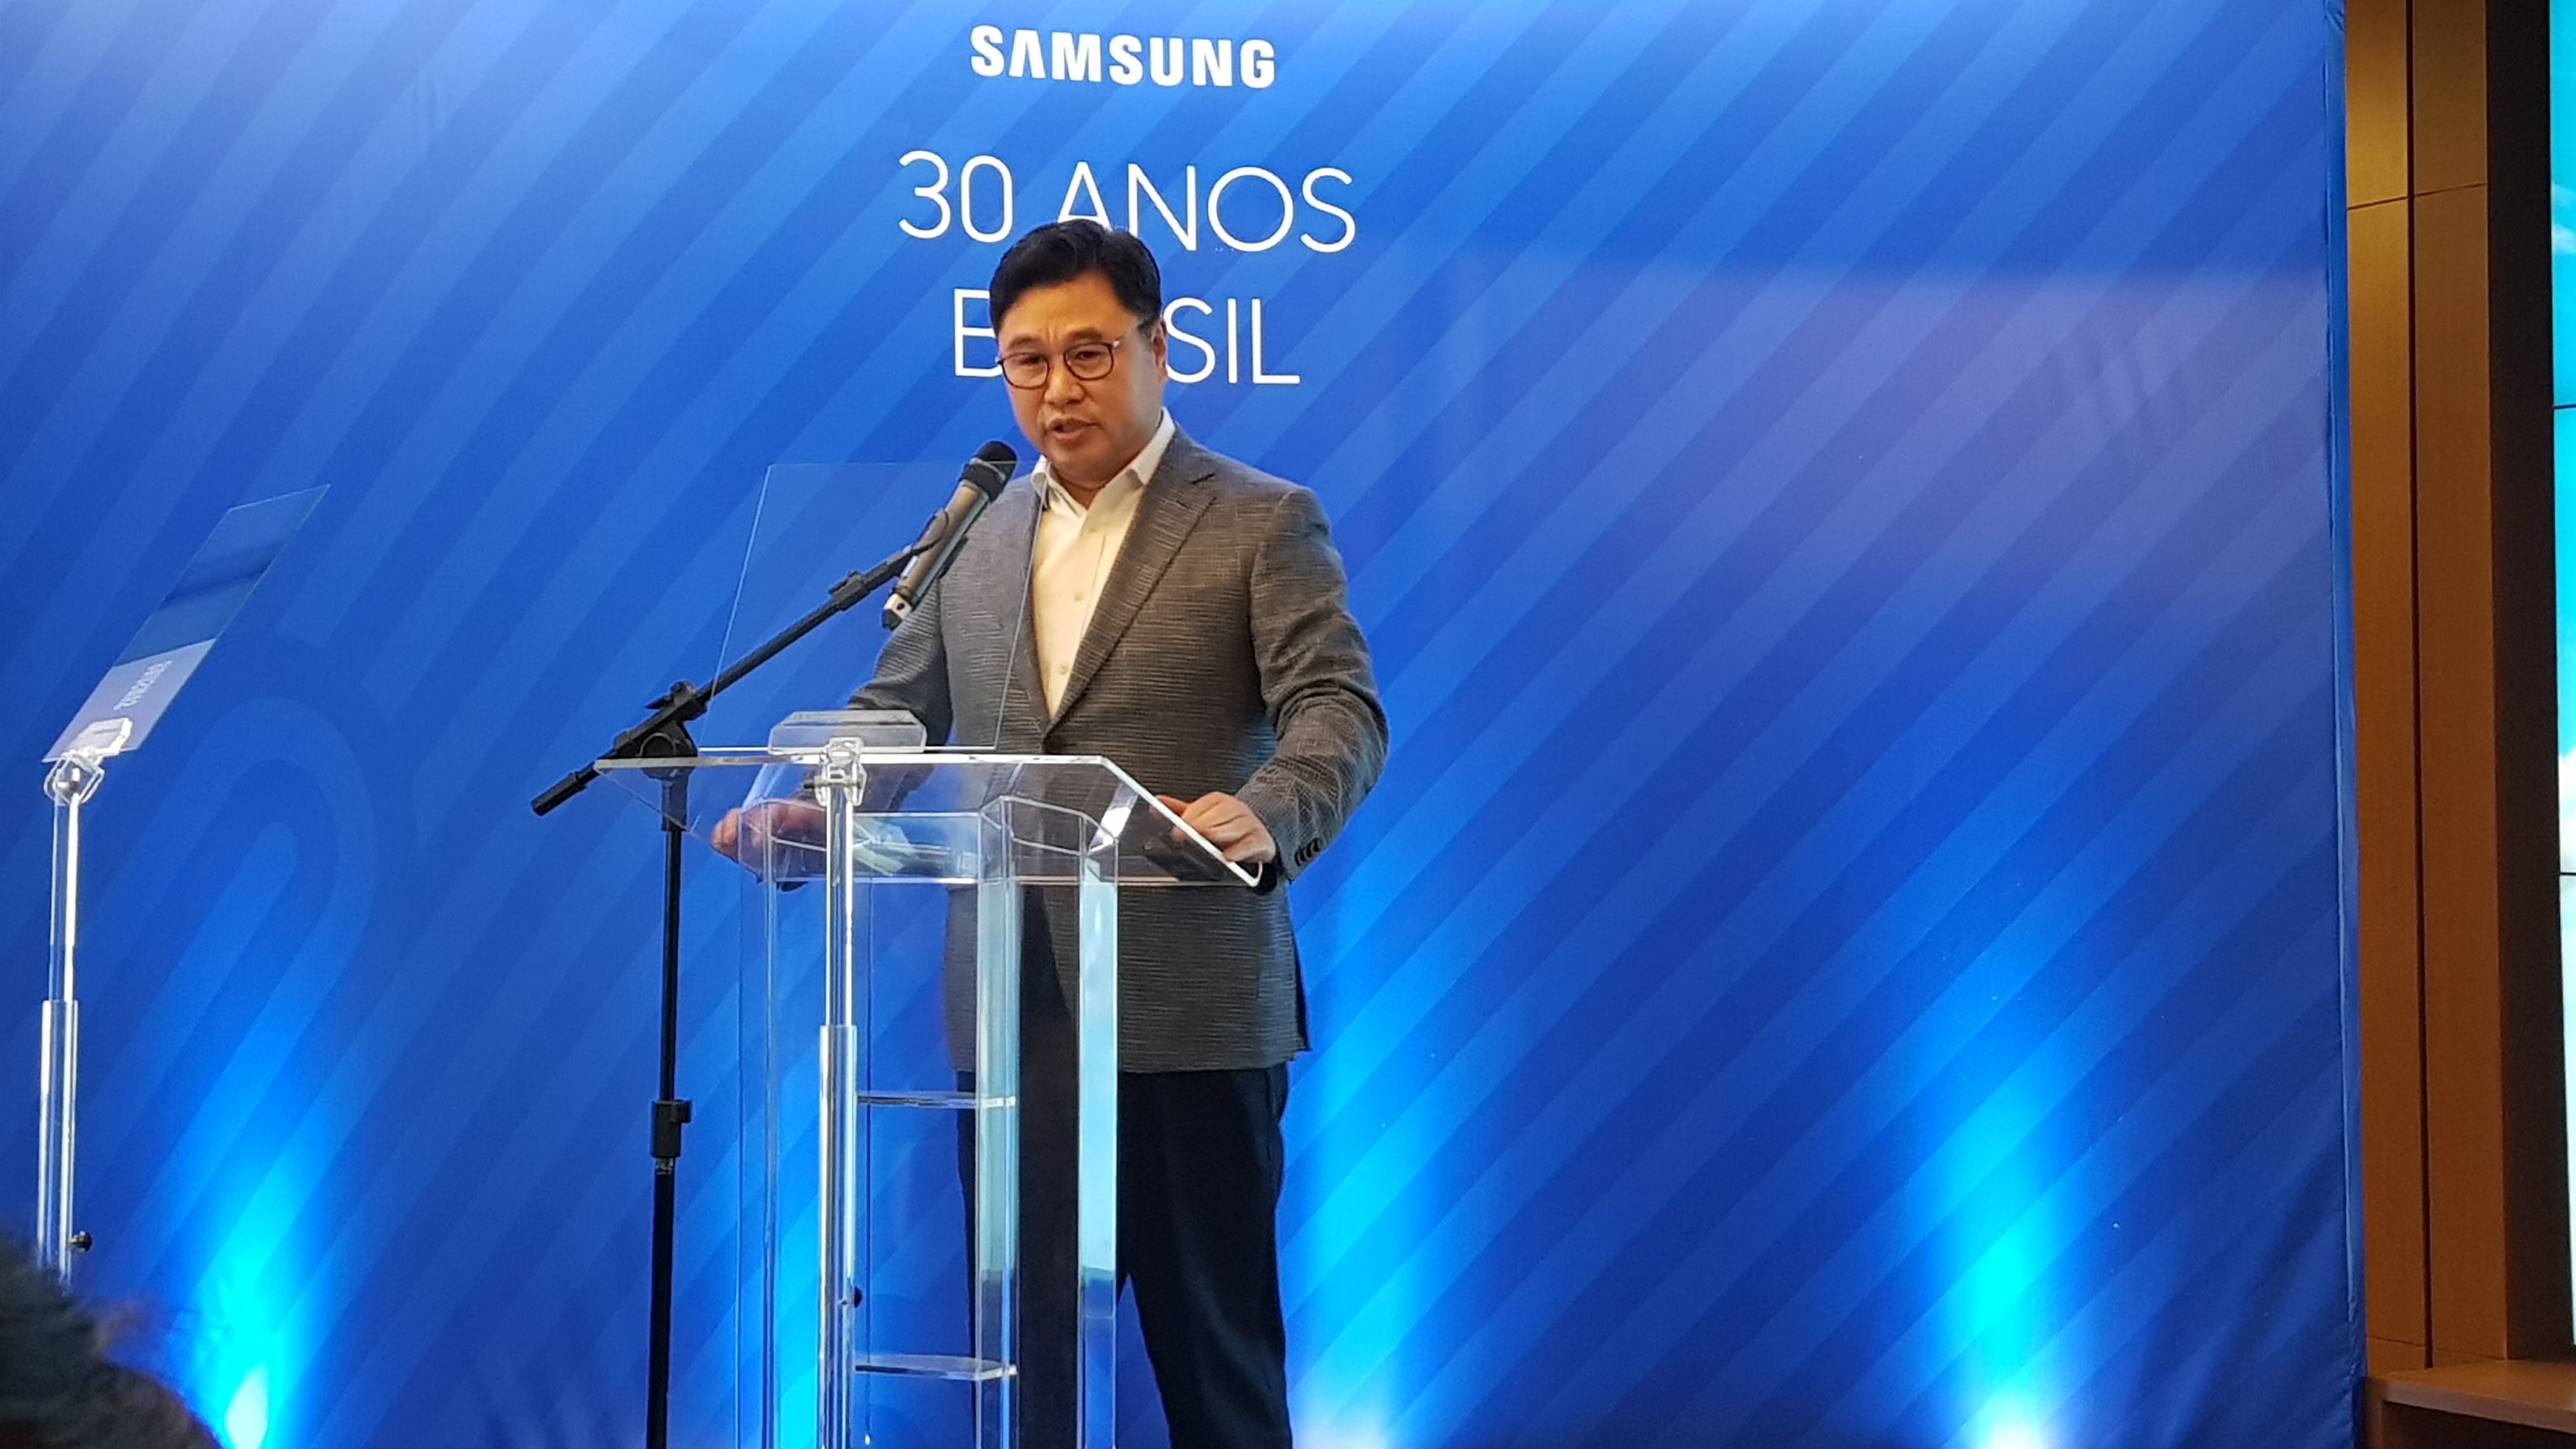 Samsung celebra 30 anos de atuação no Brasil